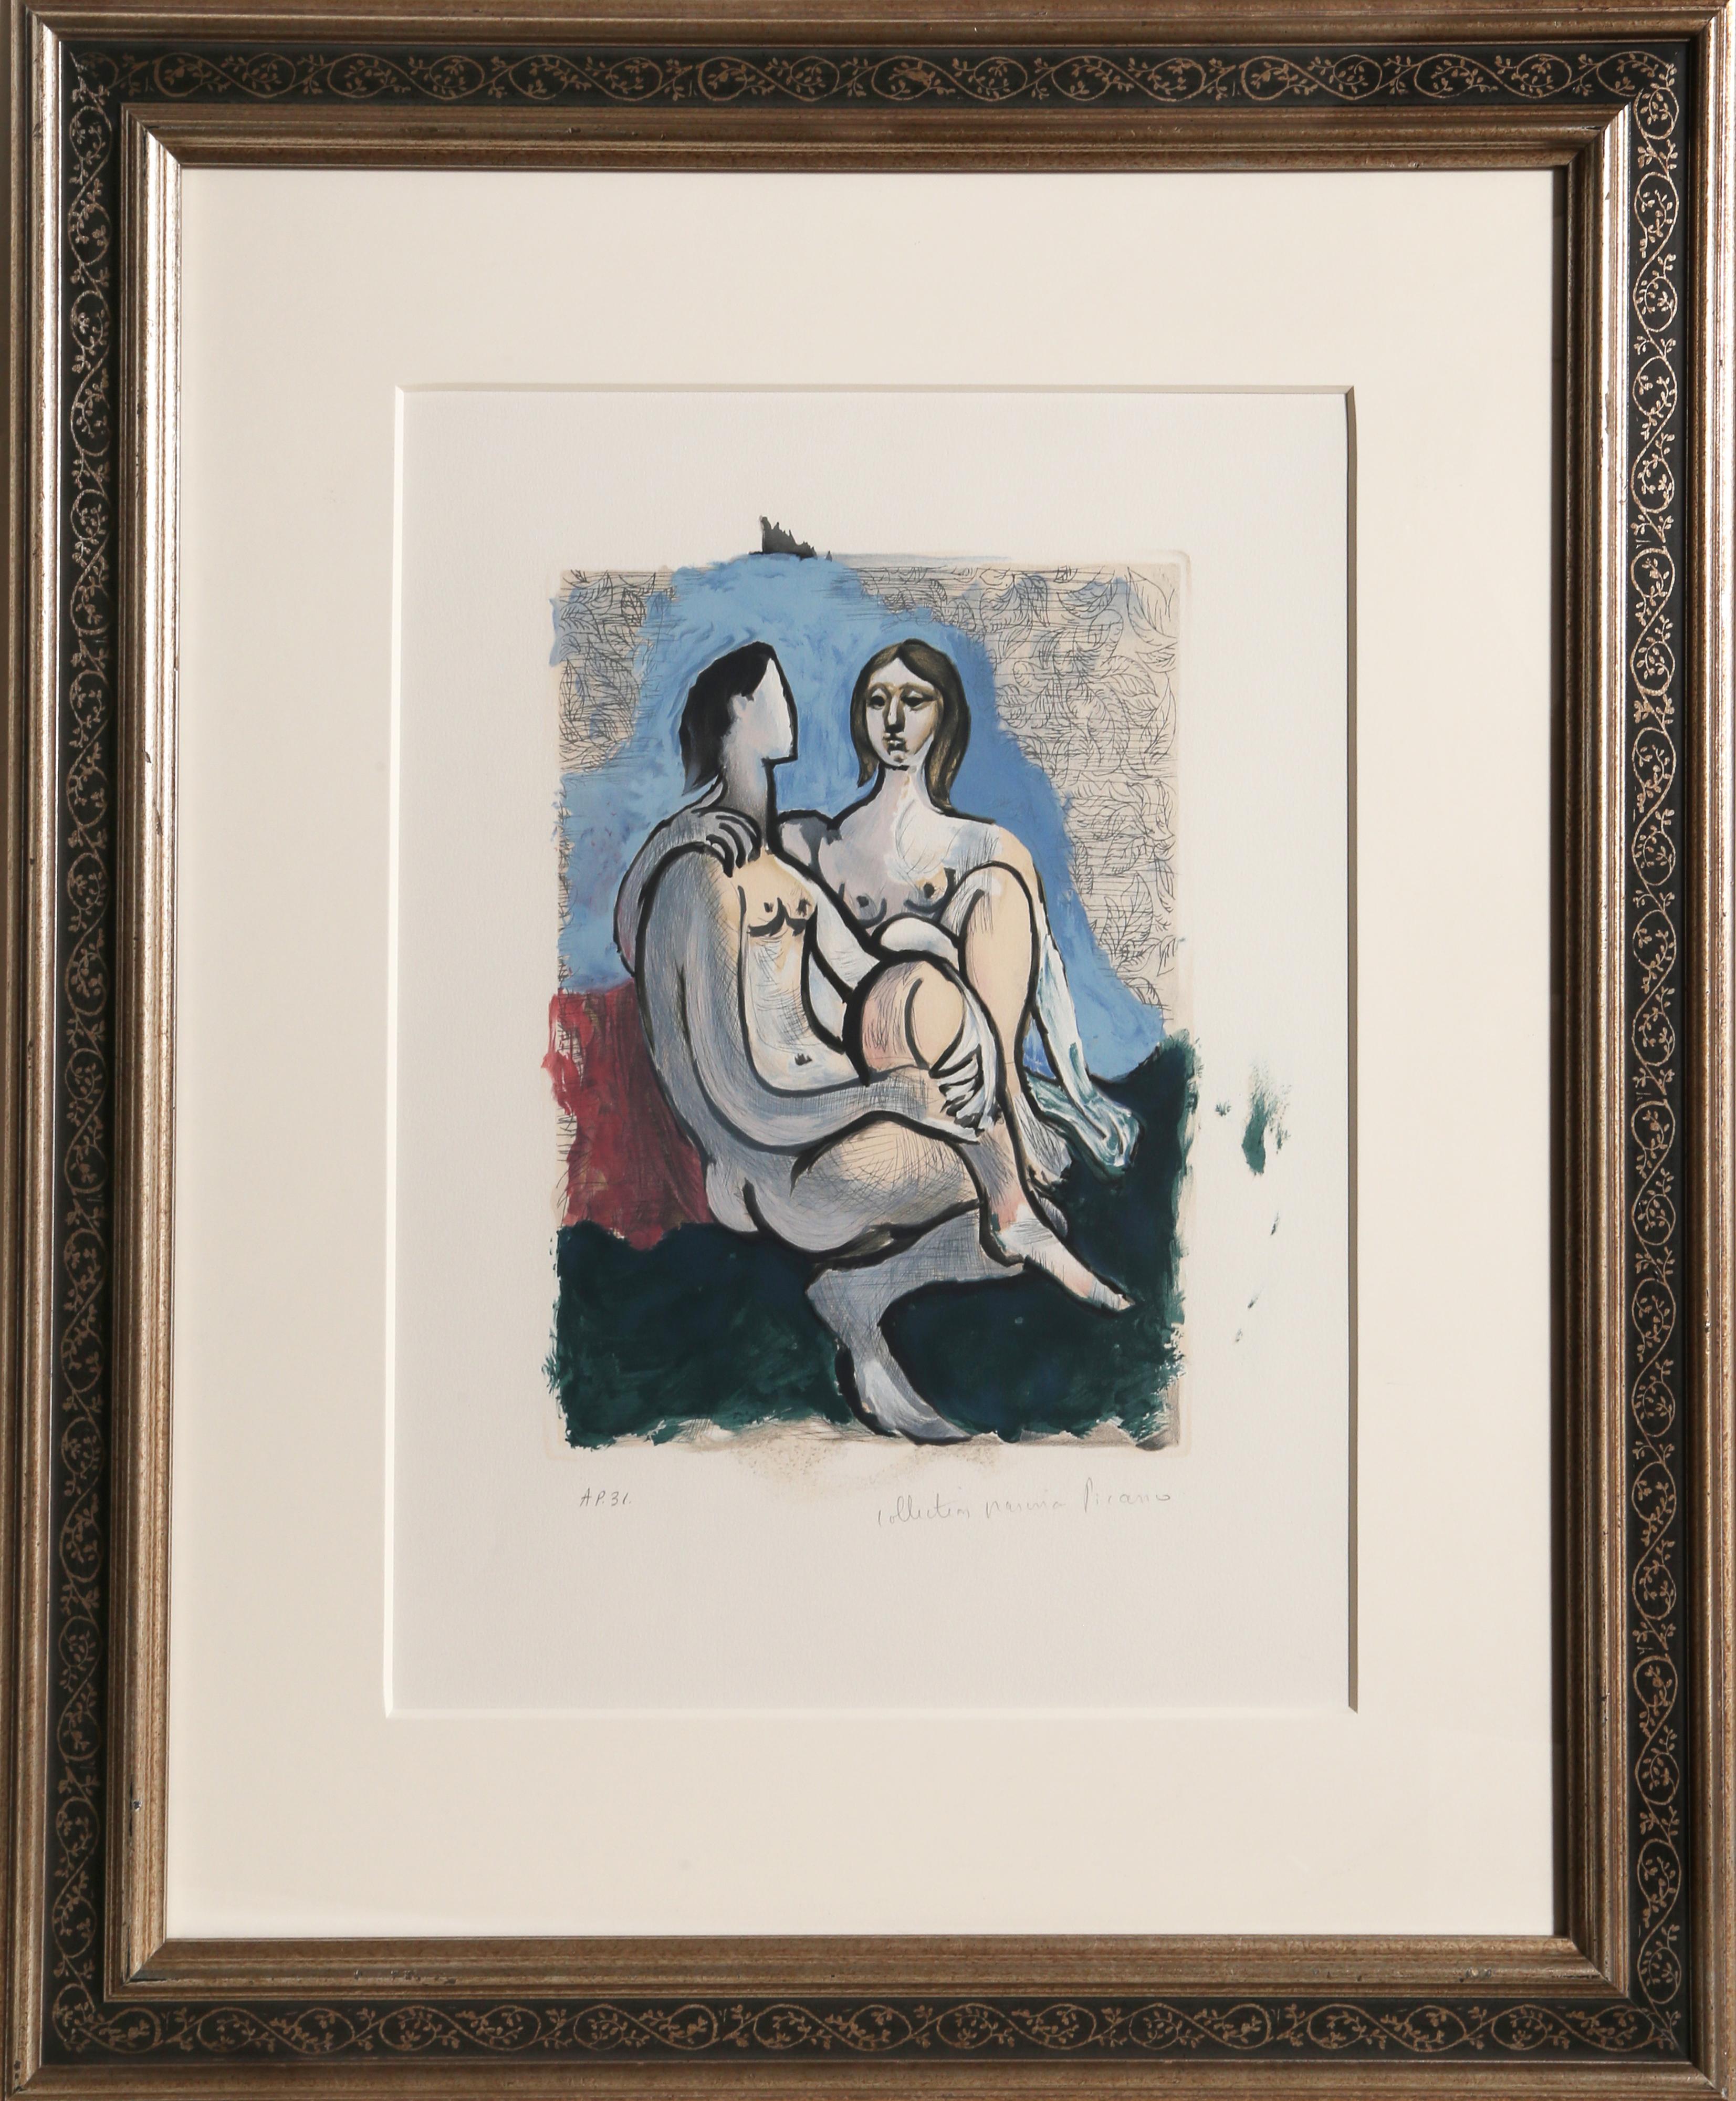 Lithographie de la Collection Salsa de Marina Picasso d'après le tableau de Pablo Picasso "La Couple". La peinture originale a été achevée en 193o. Dans les années 1970, après la mort de Picasso, Marina Picasso, sa petite-fille, a autorisé la